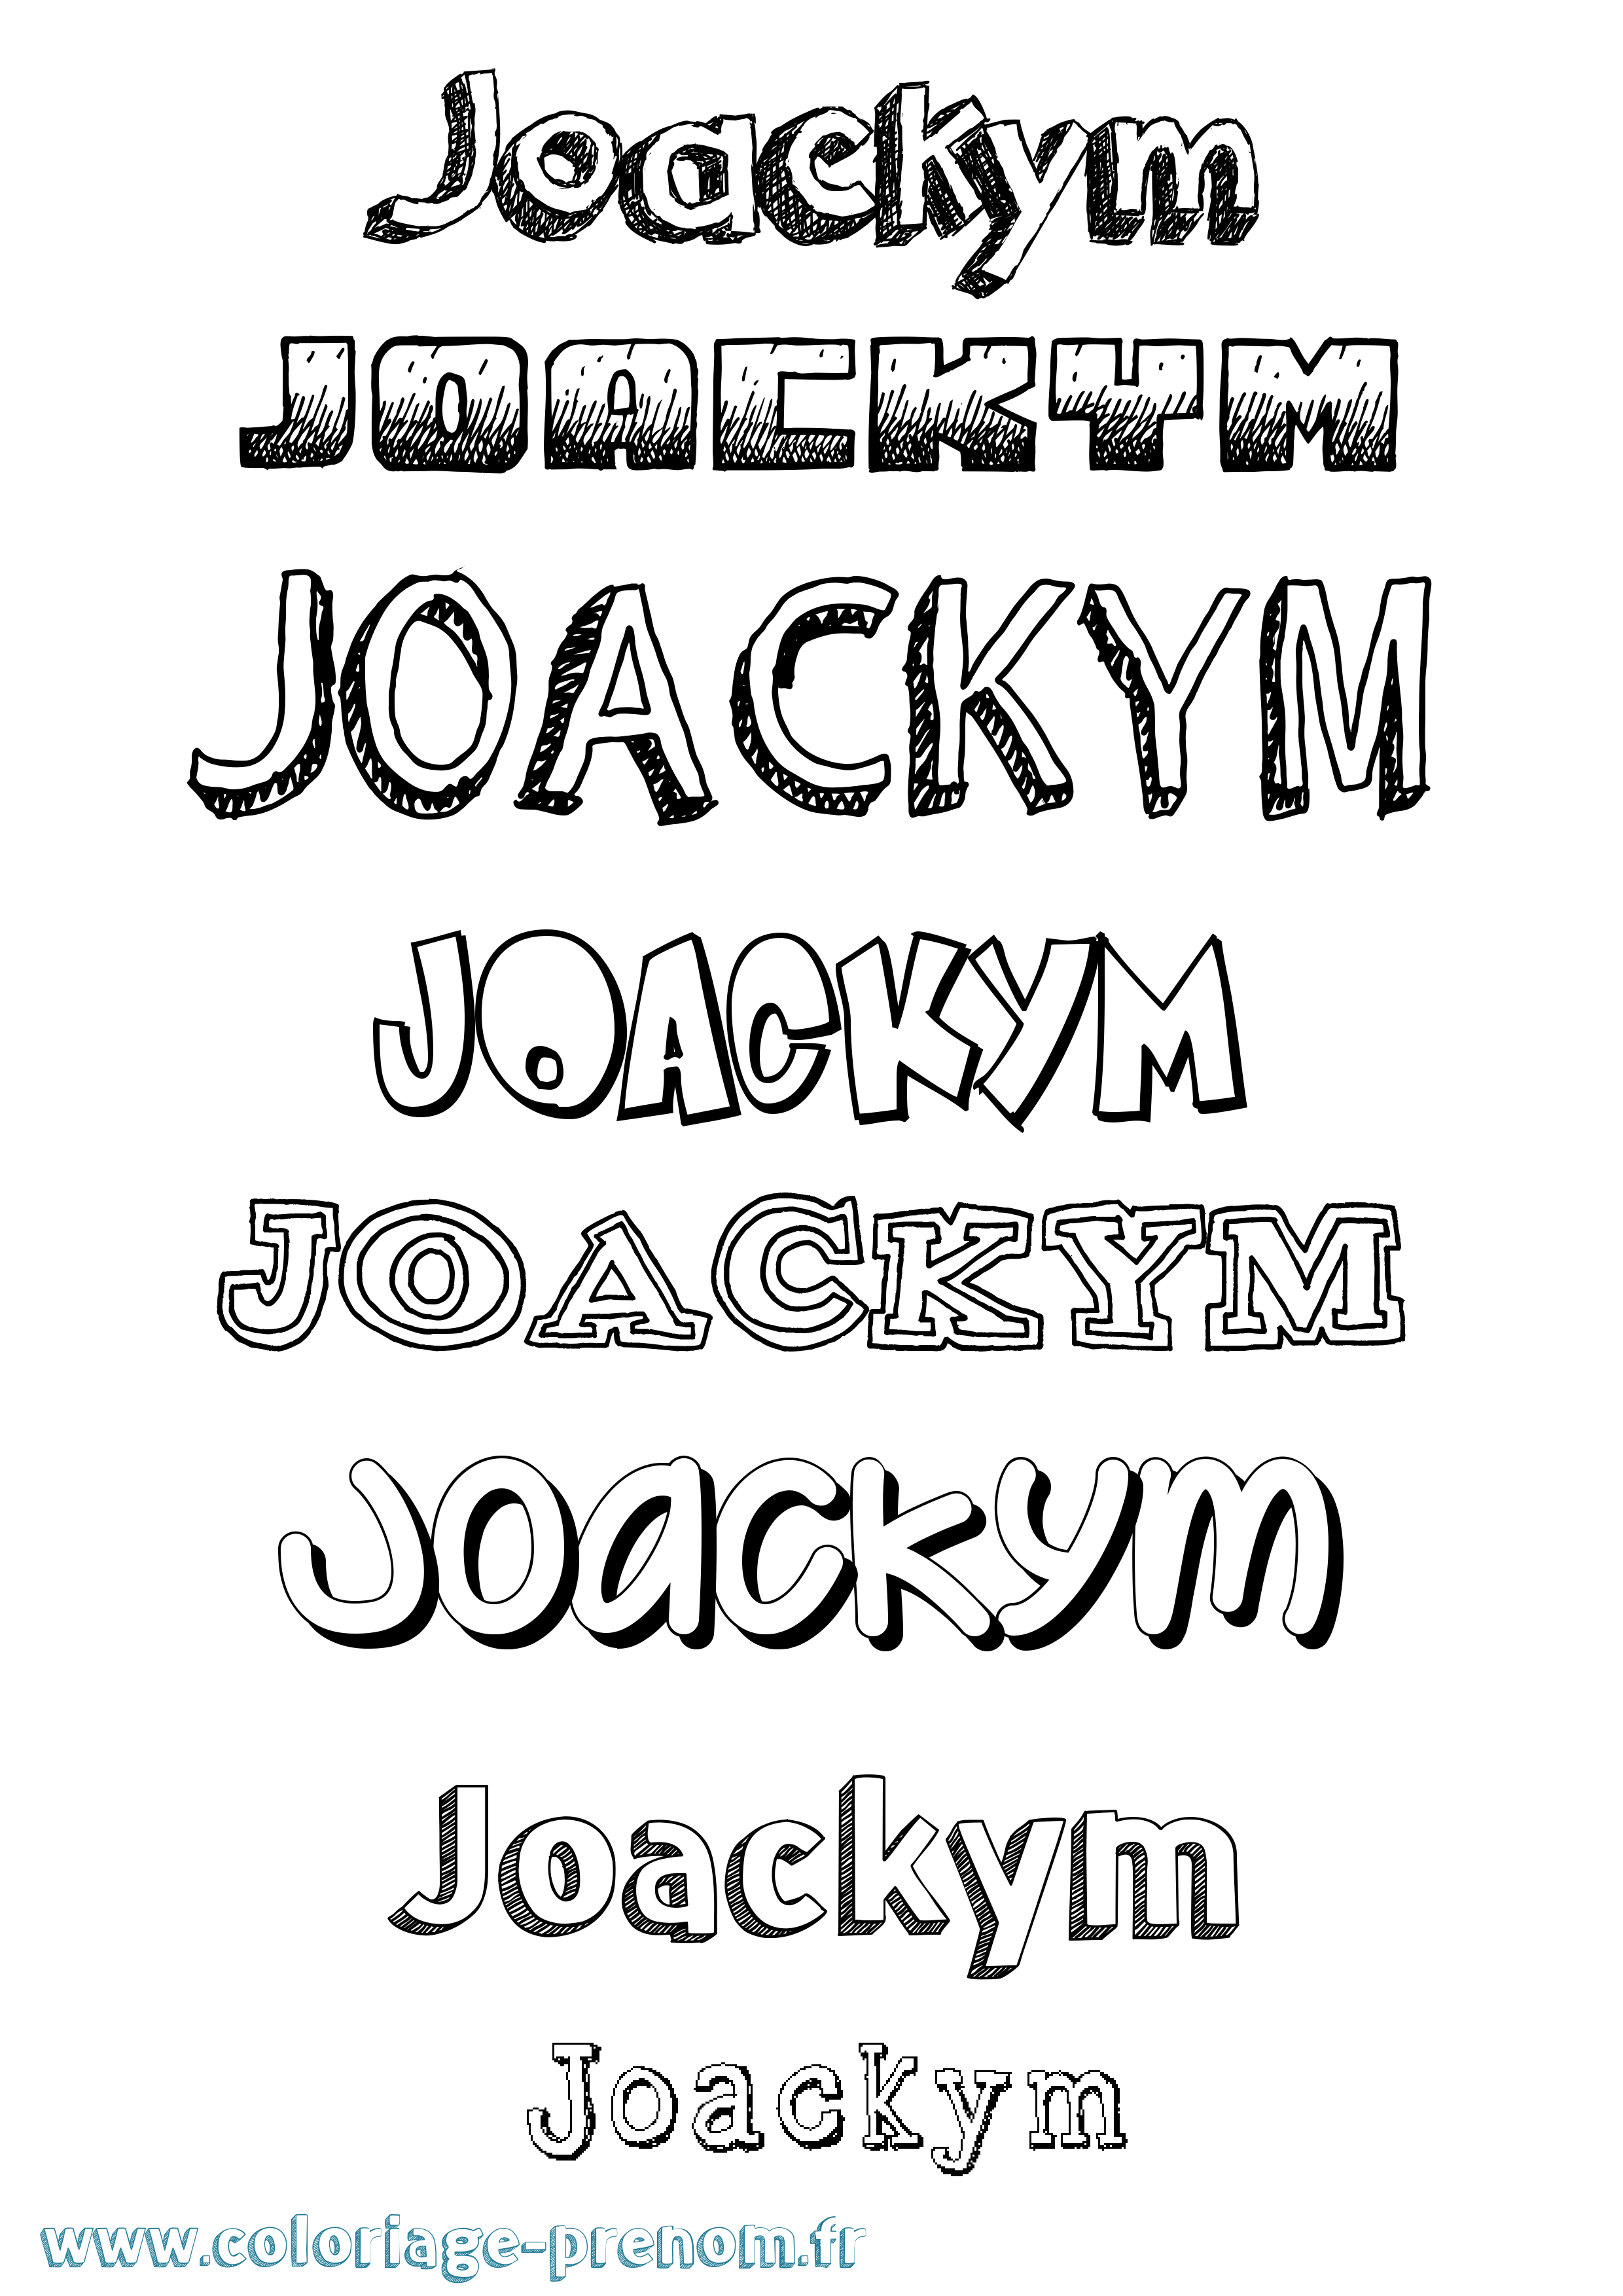 Coloriage prénom Joackym Dessiné